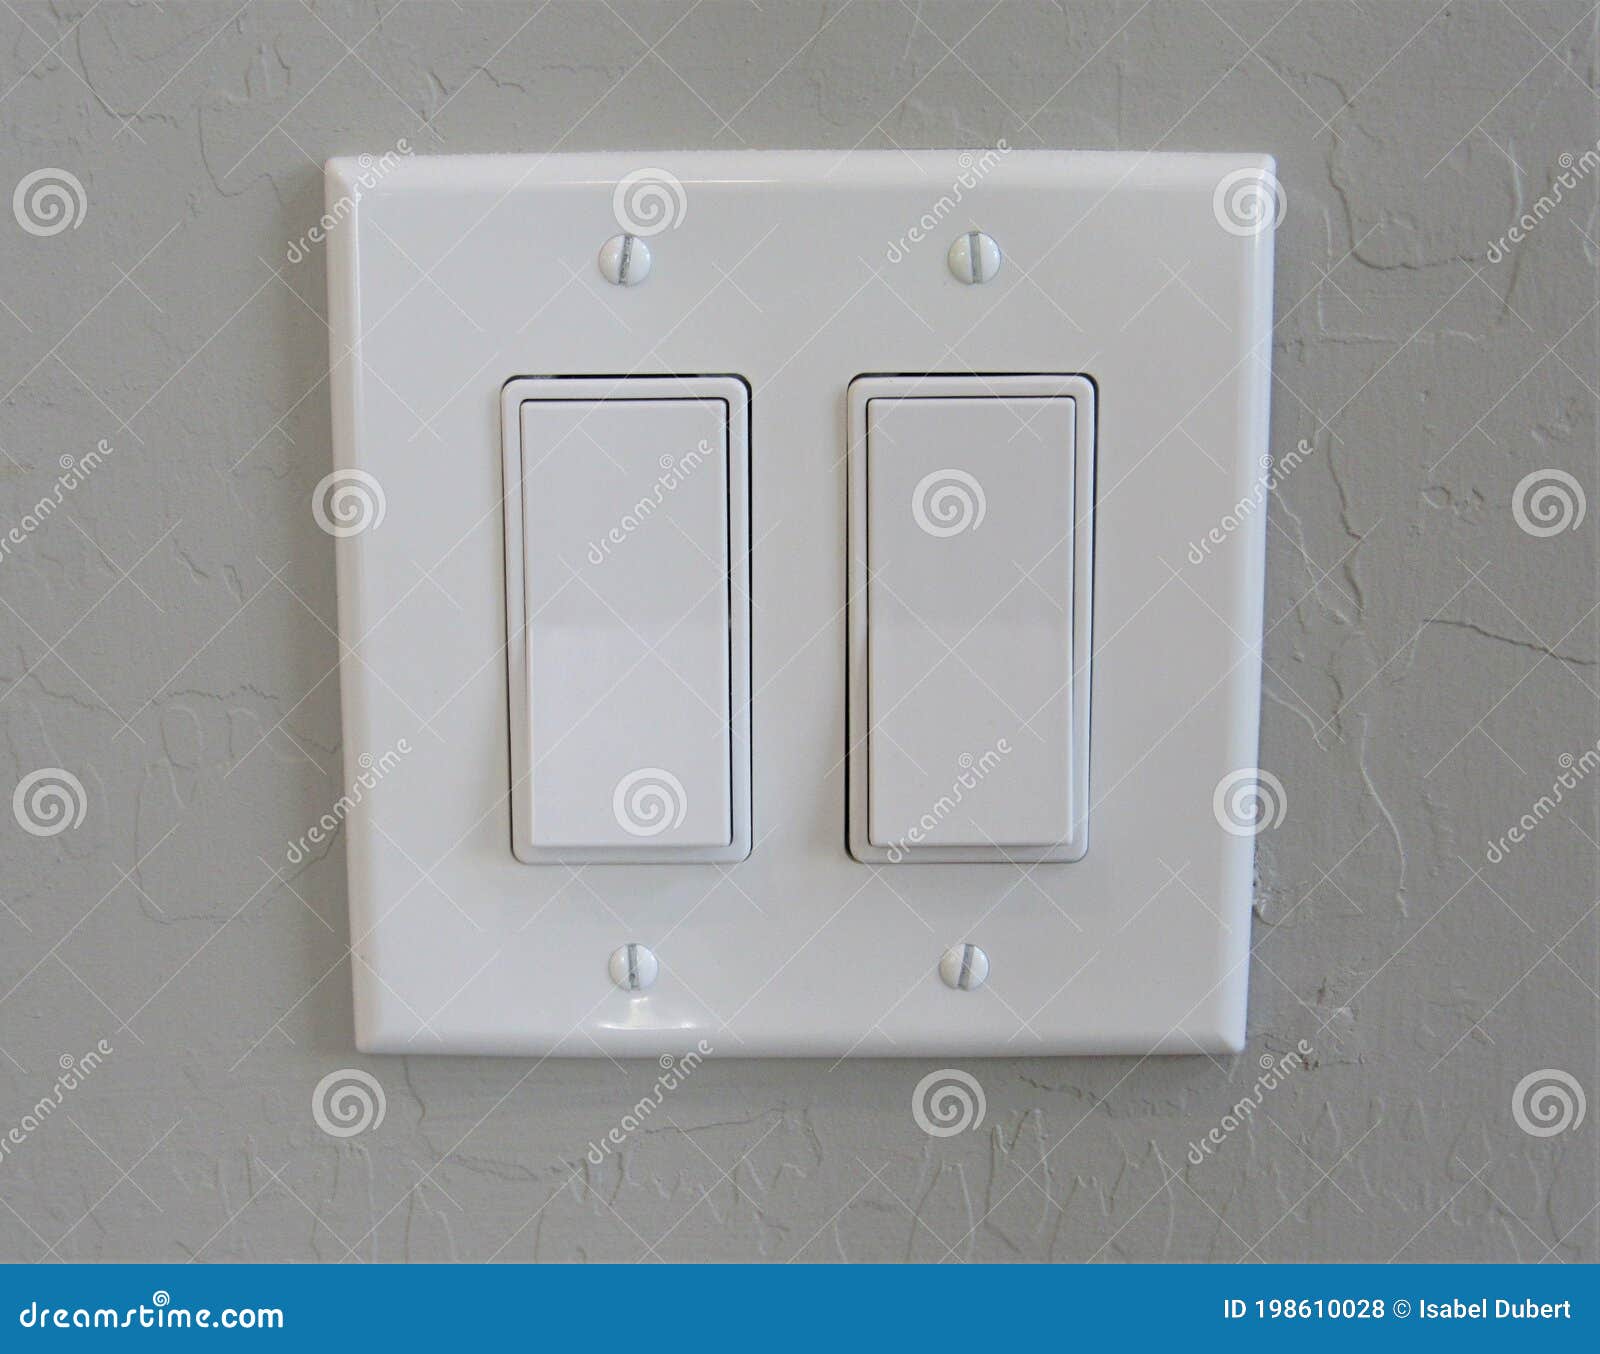 https://thumbs.dreamstime.com/z/interruptores-de-luz-modernos-en-una-pared-interruptor-blanco-moderno-instalado-interior-pintada-con-m%C3%BAltiples-botones-198610028.jpg